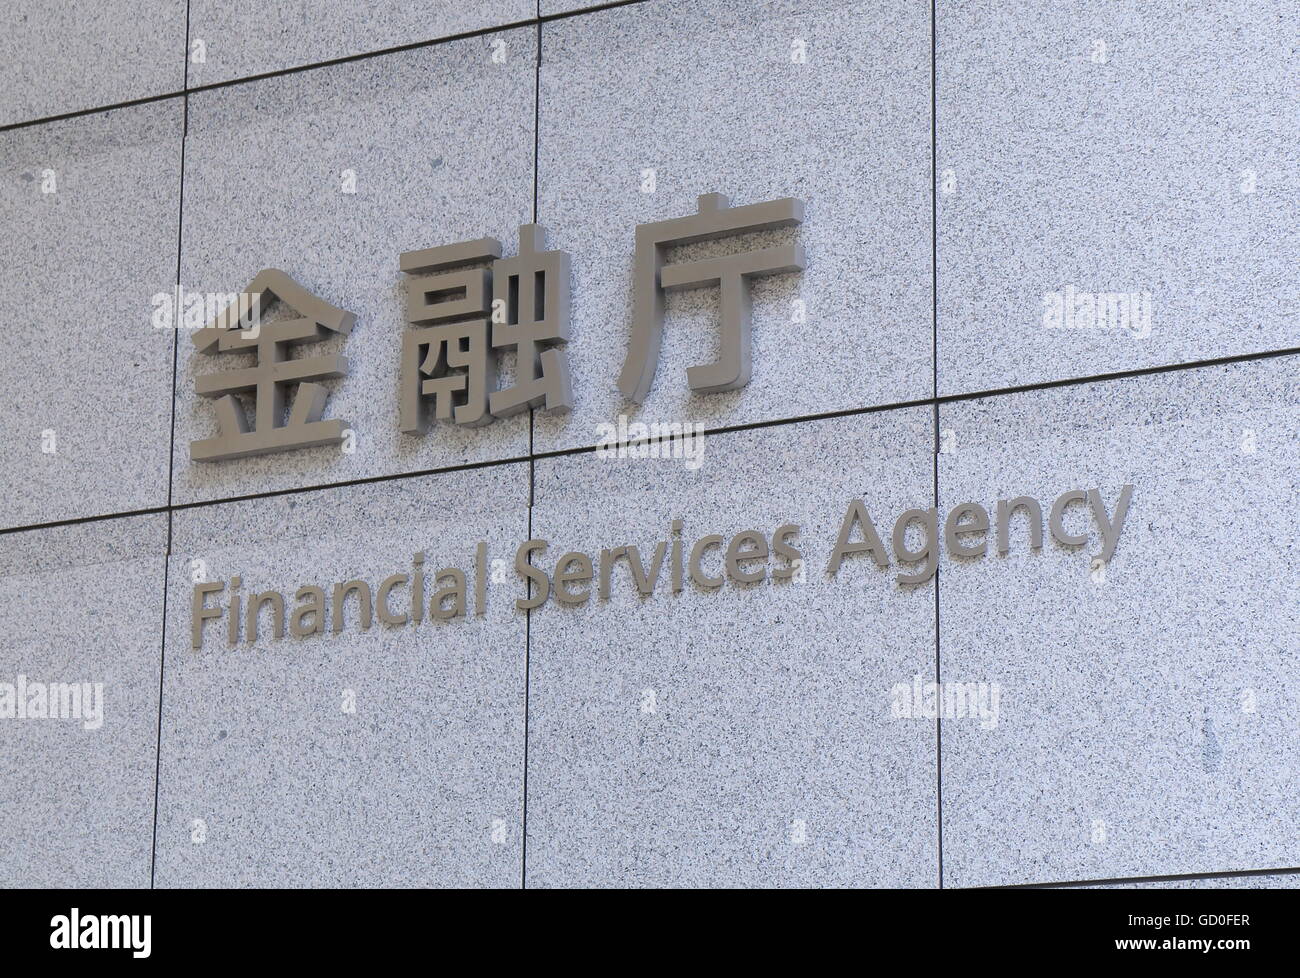 Financial Services Agency in Tokio, staatliche Organisation verantwortlich für die Aufsicht über Banken, Wertpapiere und Börse. Stockfoto